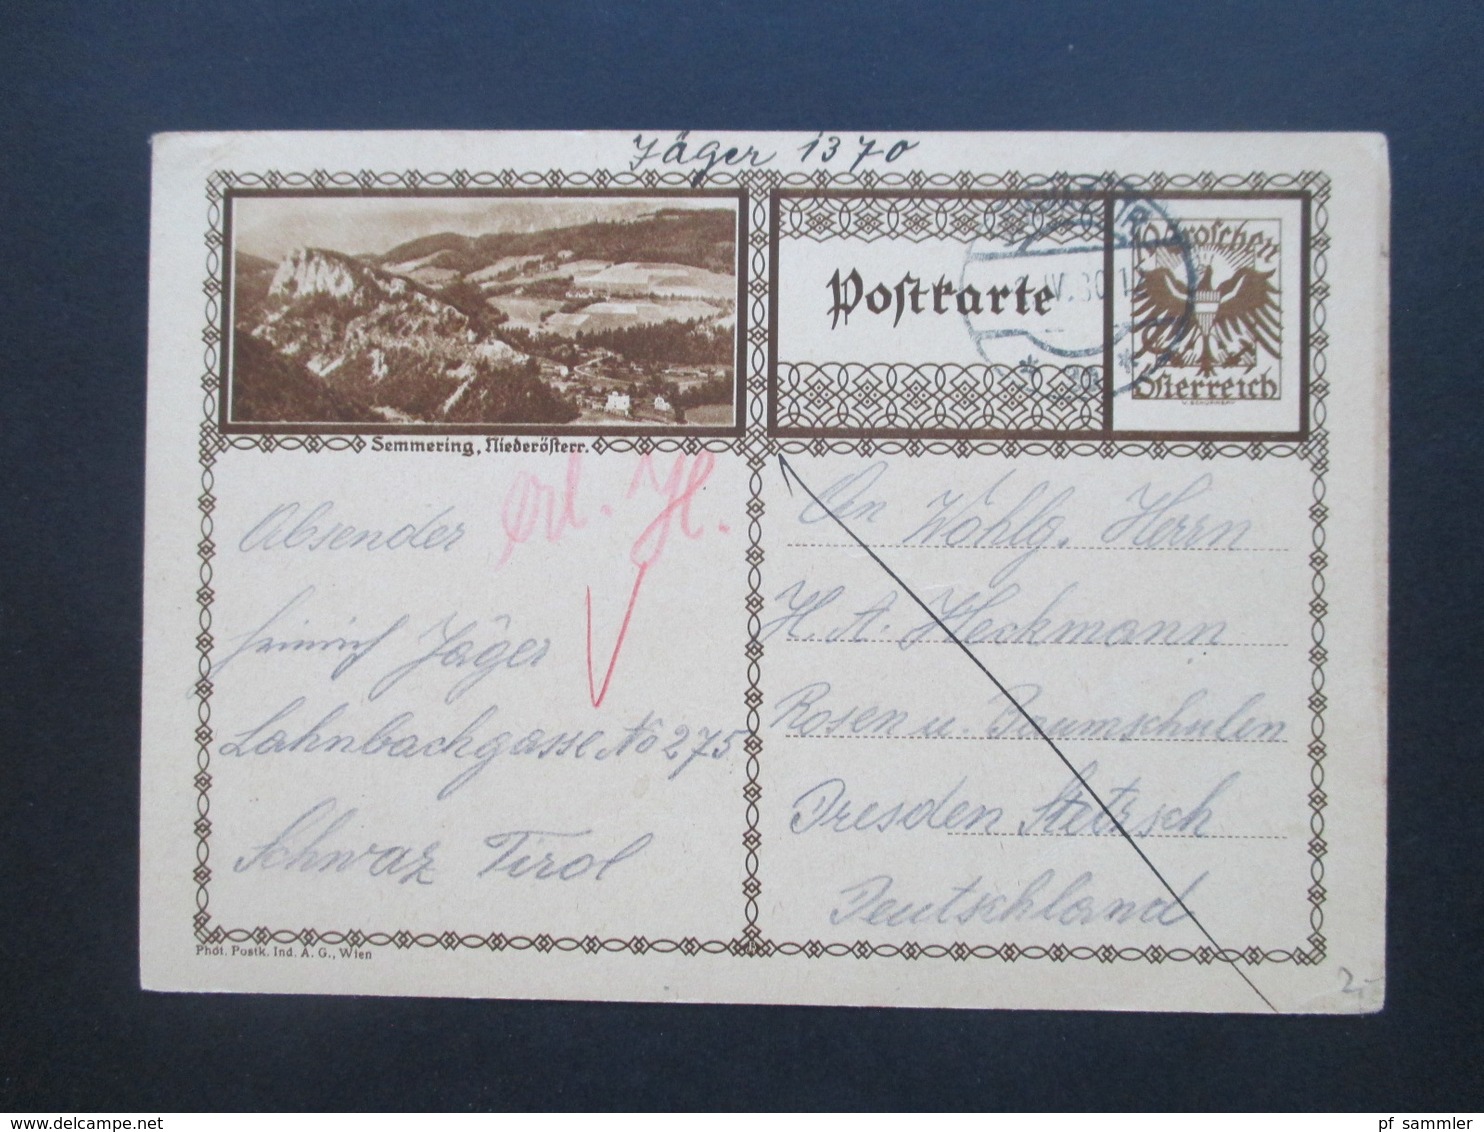 Österreich Ganzsachen Posten ab 1876 - 1920er Jahre + 5 neuere! Insgesamt 48 Karten interessante Stempel??